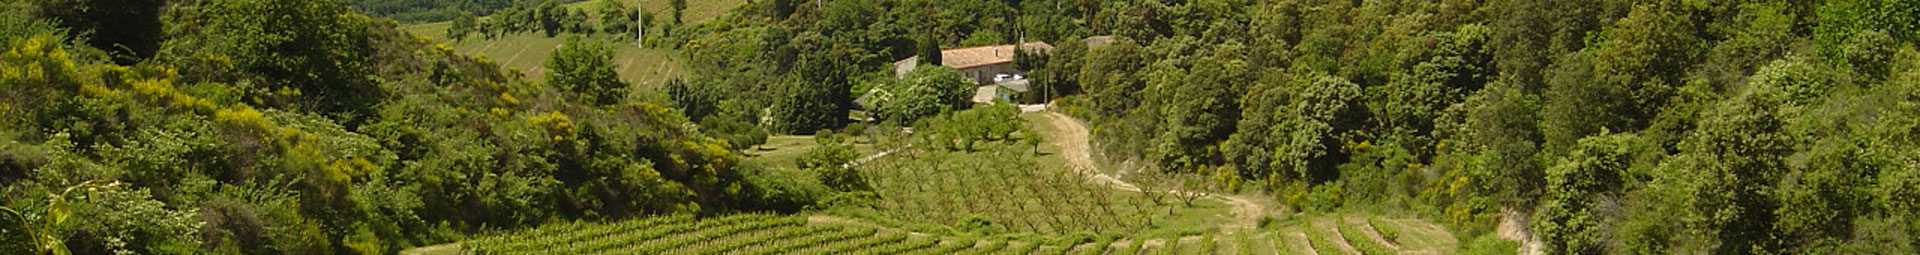 Les Chemins du Sud - Wine estate and property sale